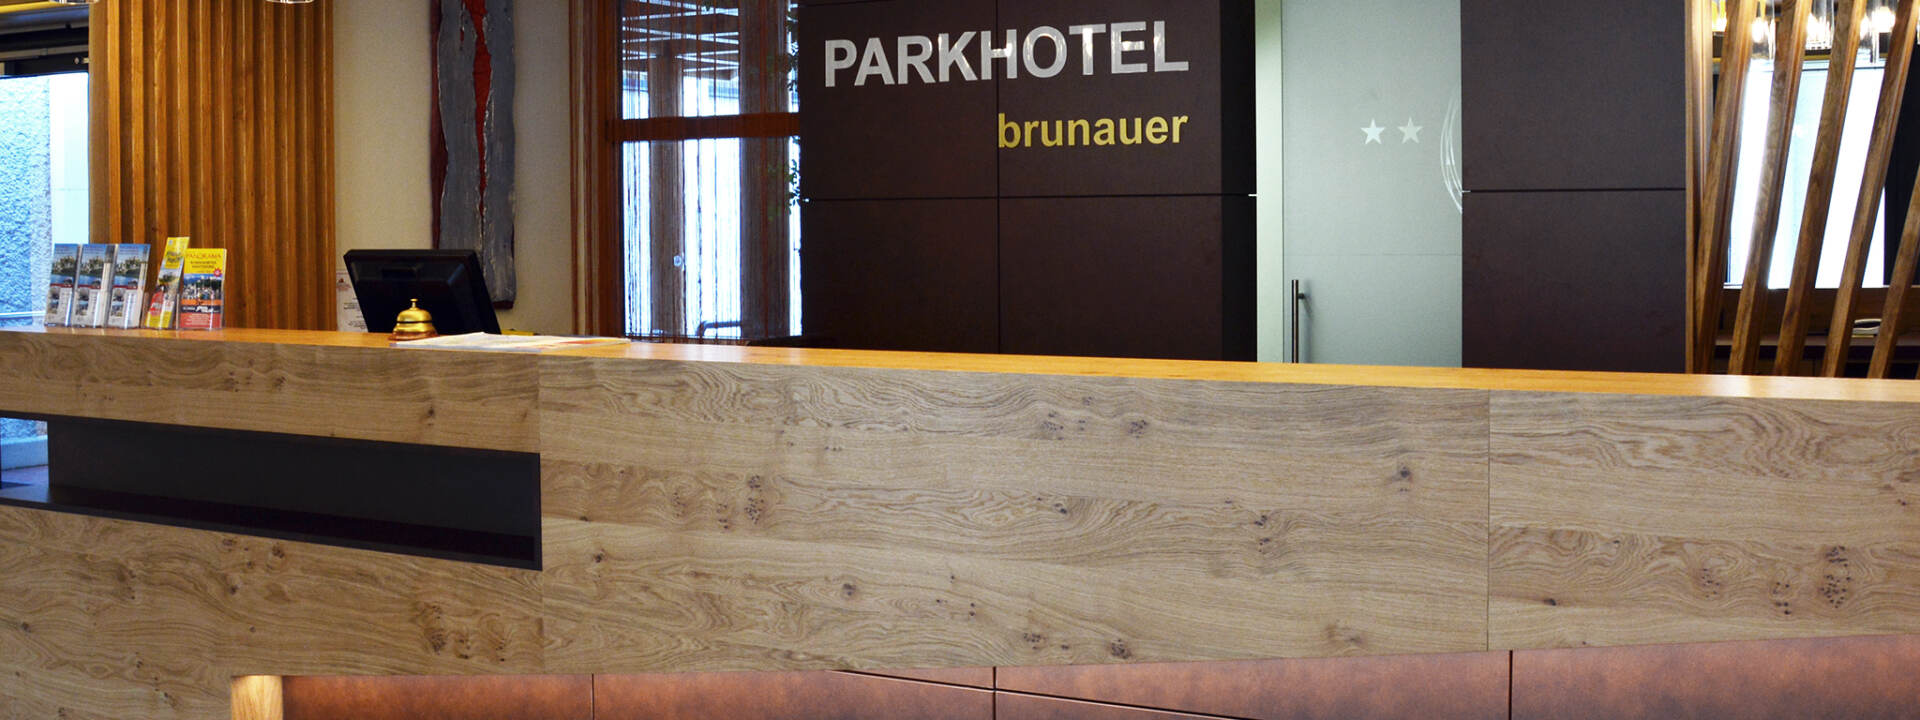 Parkhotel Brunauer - Rezeption © Parkhotel Brunauer